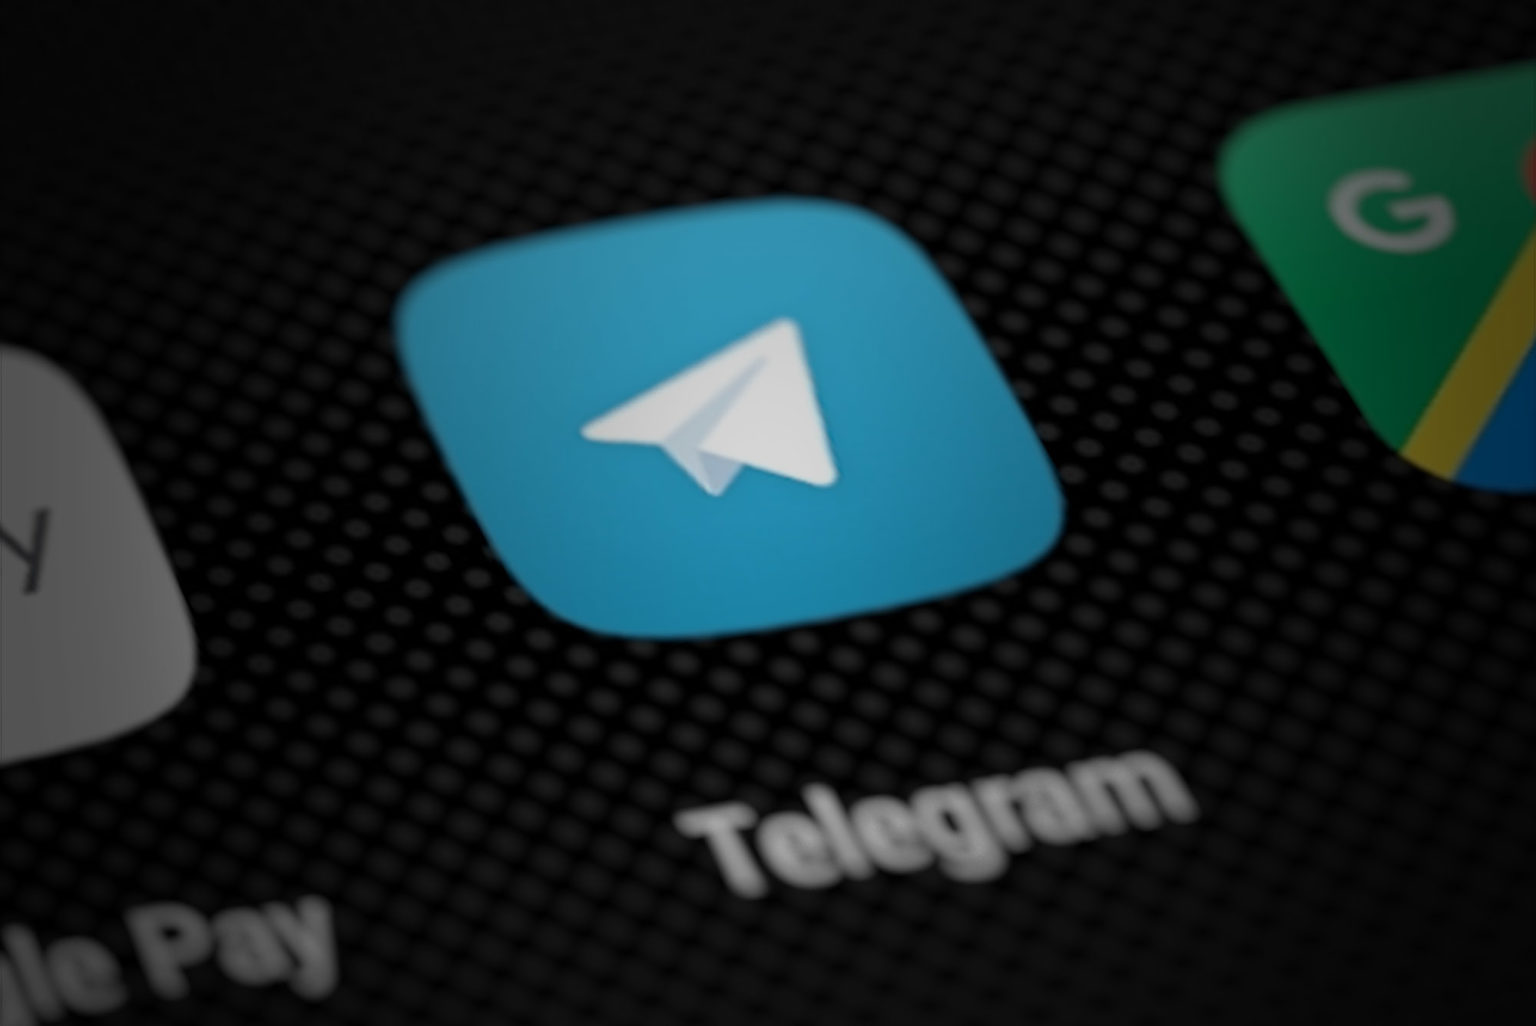 Телеграмм установить на телефон на русском языке бесплатно для андроид без рекламы фото 116